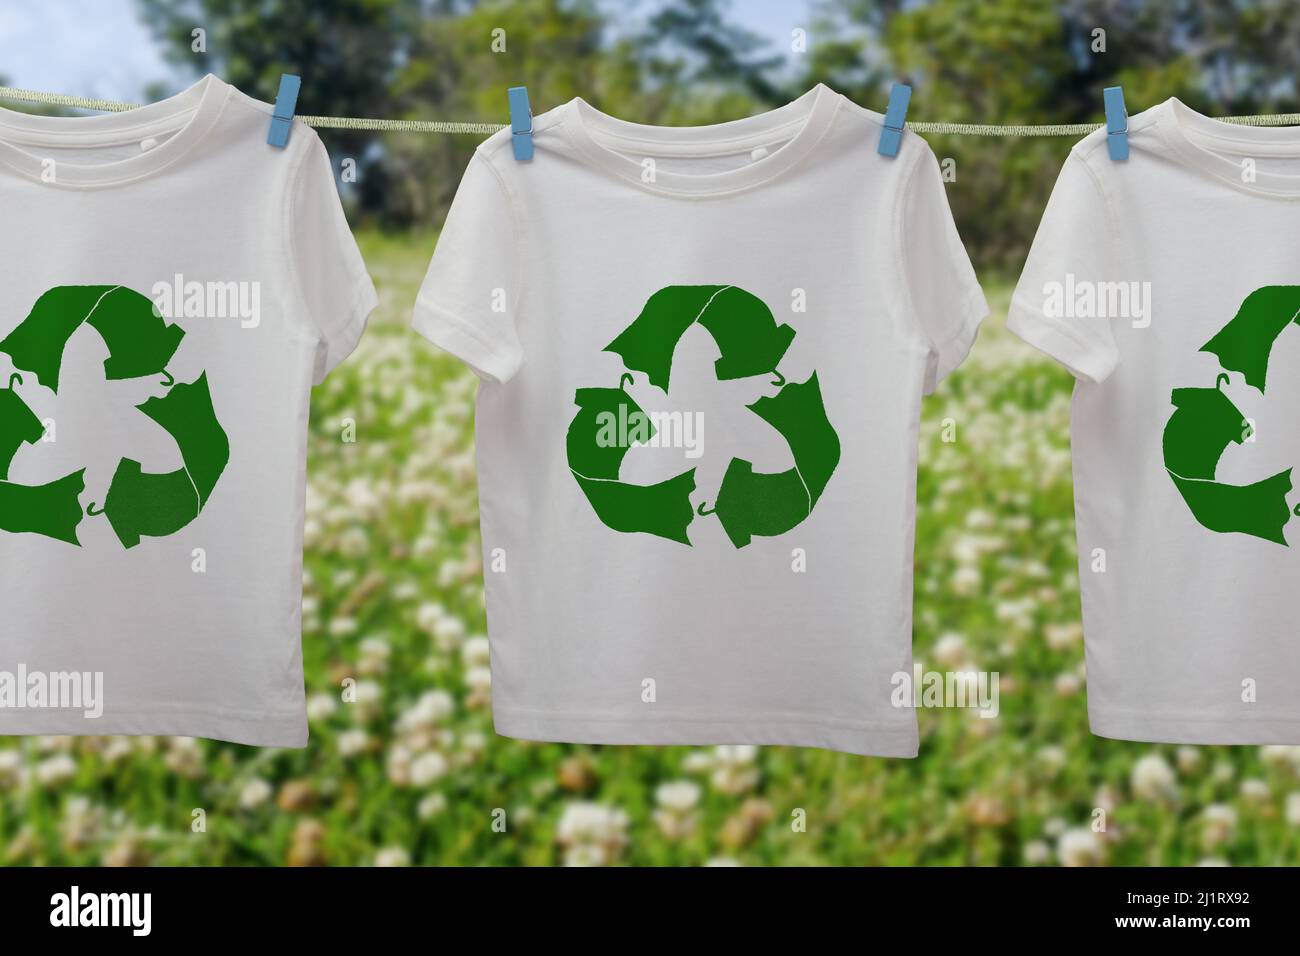 Recyceln Sie Kleidung Icon auf T-Shirts online, nachhaltige Mode Konzept Wiederverwendung, recyceln Kleidung und Textilien Abfälle zu reduzieren Stockfoto